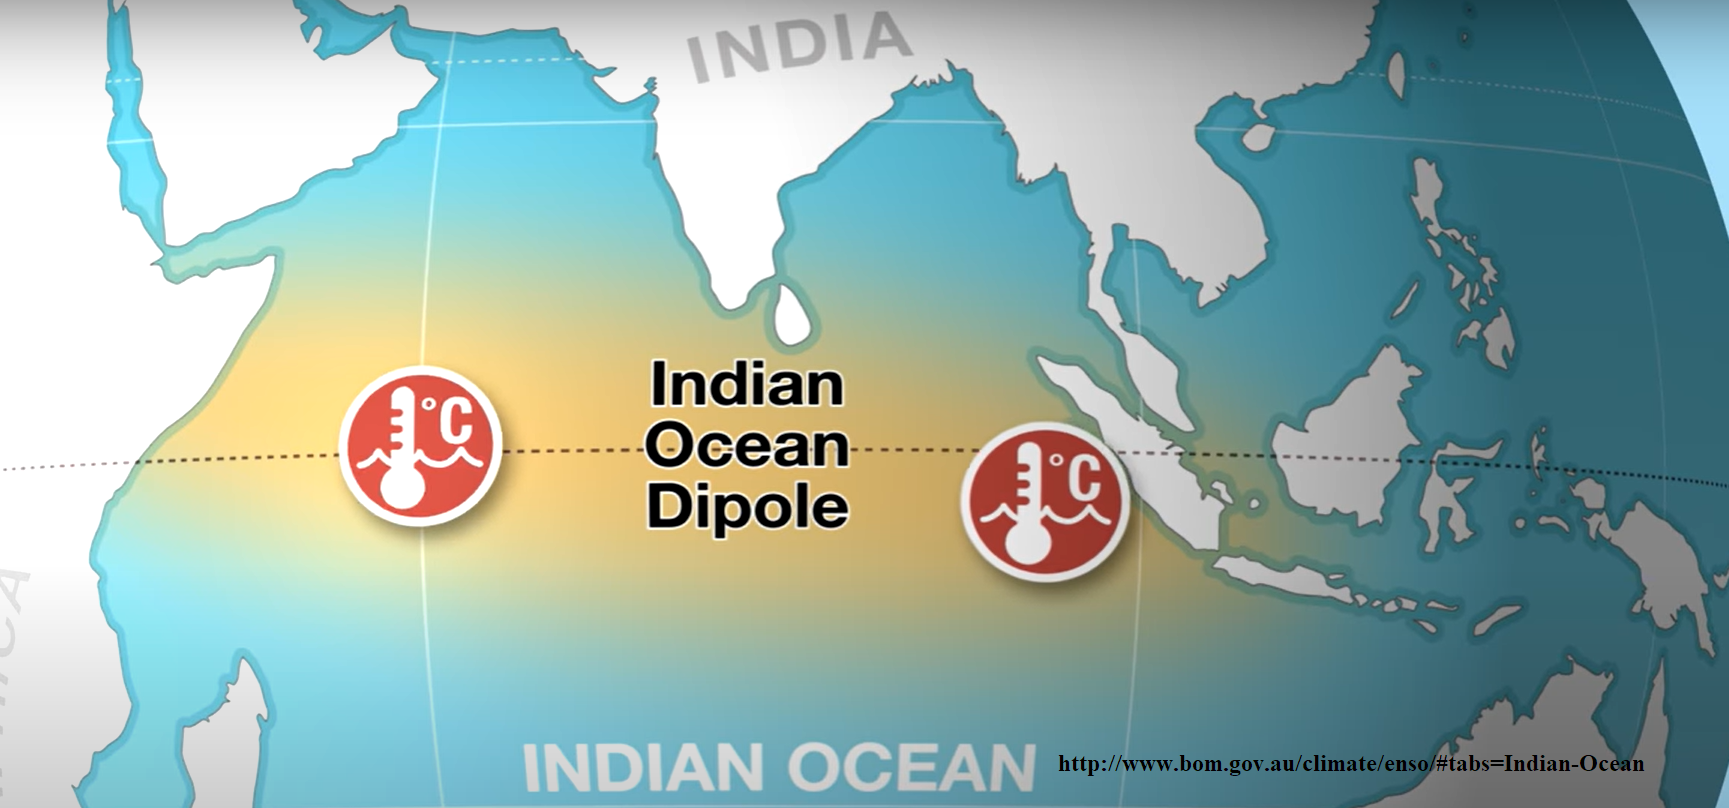 5 Fakta Fenomena Indian Ocean Dipole Iod Salah Satu Pengendali Iklim Di Indonesia